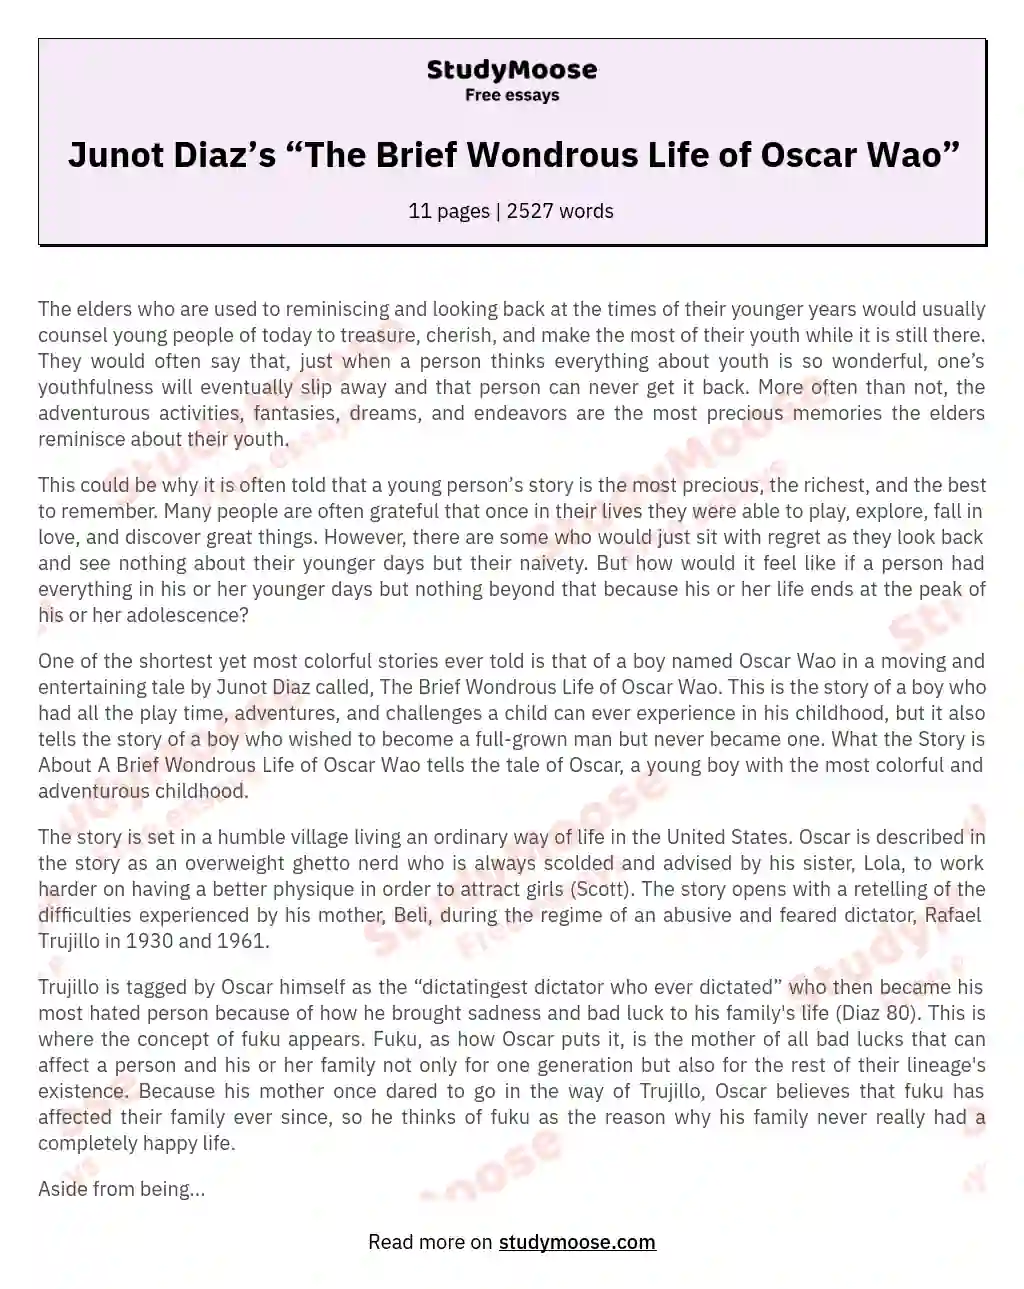 Junot Diaz’s “The Brief Wondrous Life of Oscar Wao”